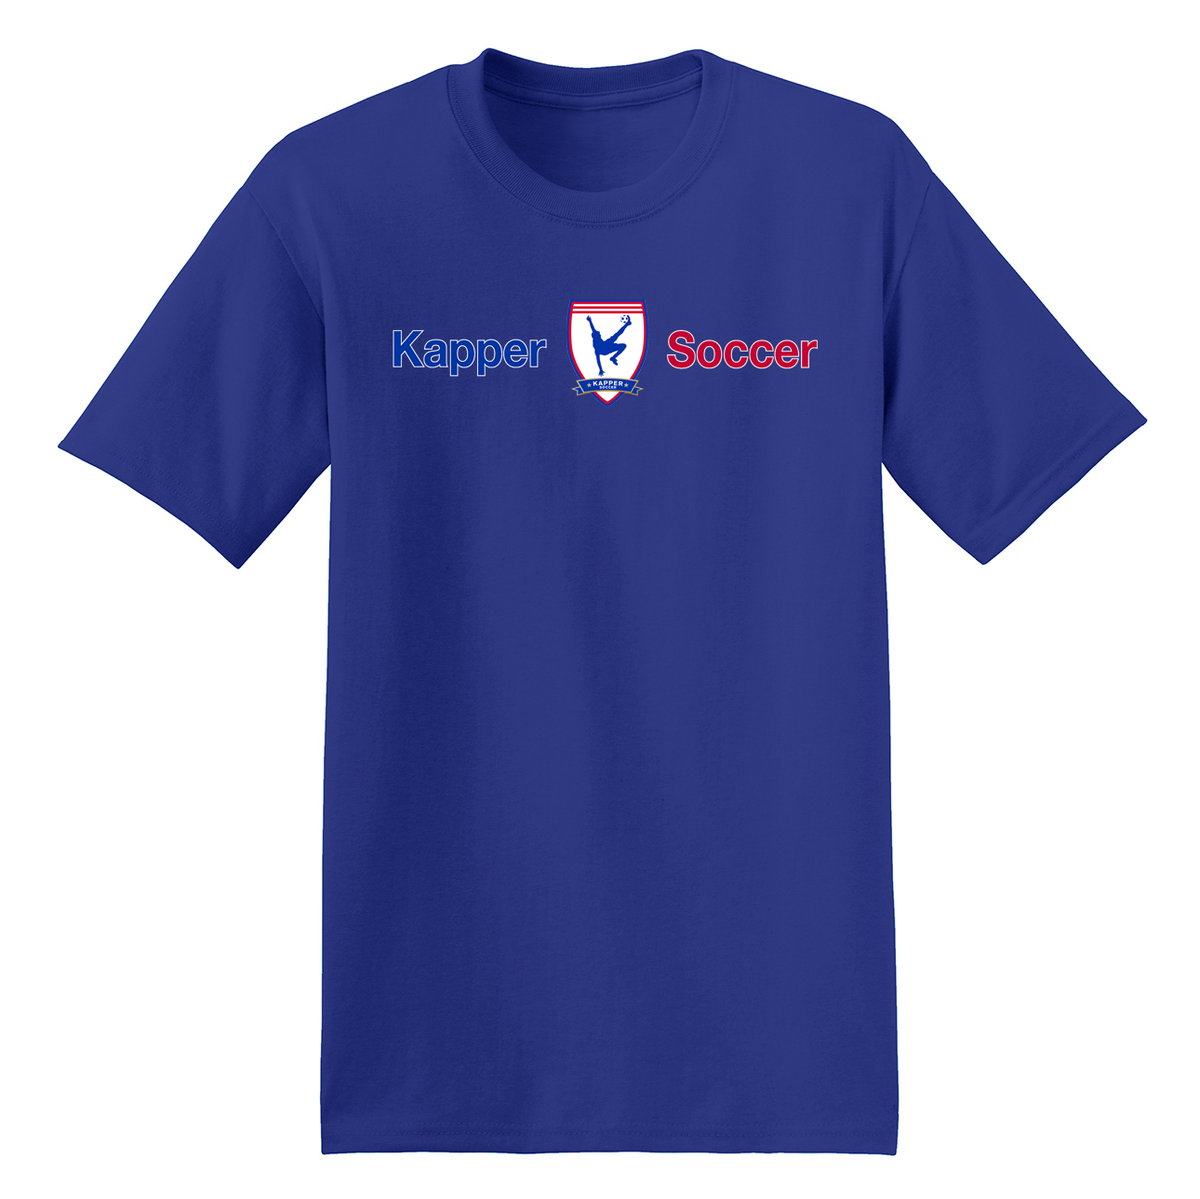 Kapper Soccer T-Shirt